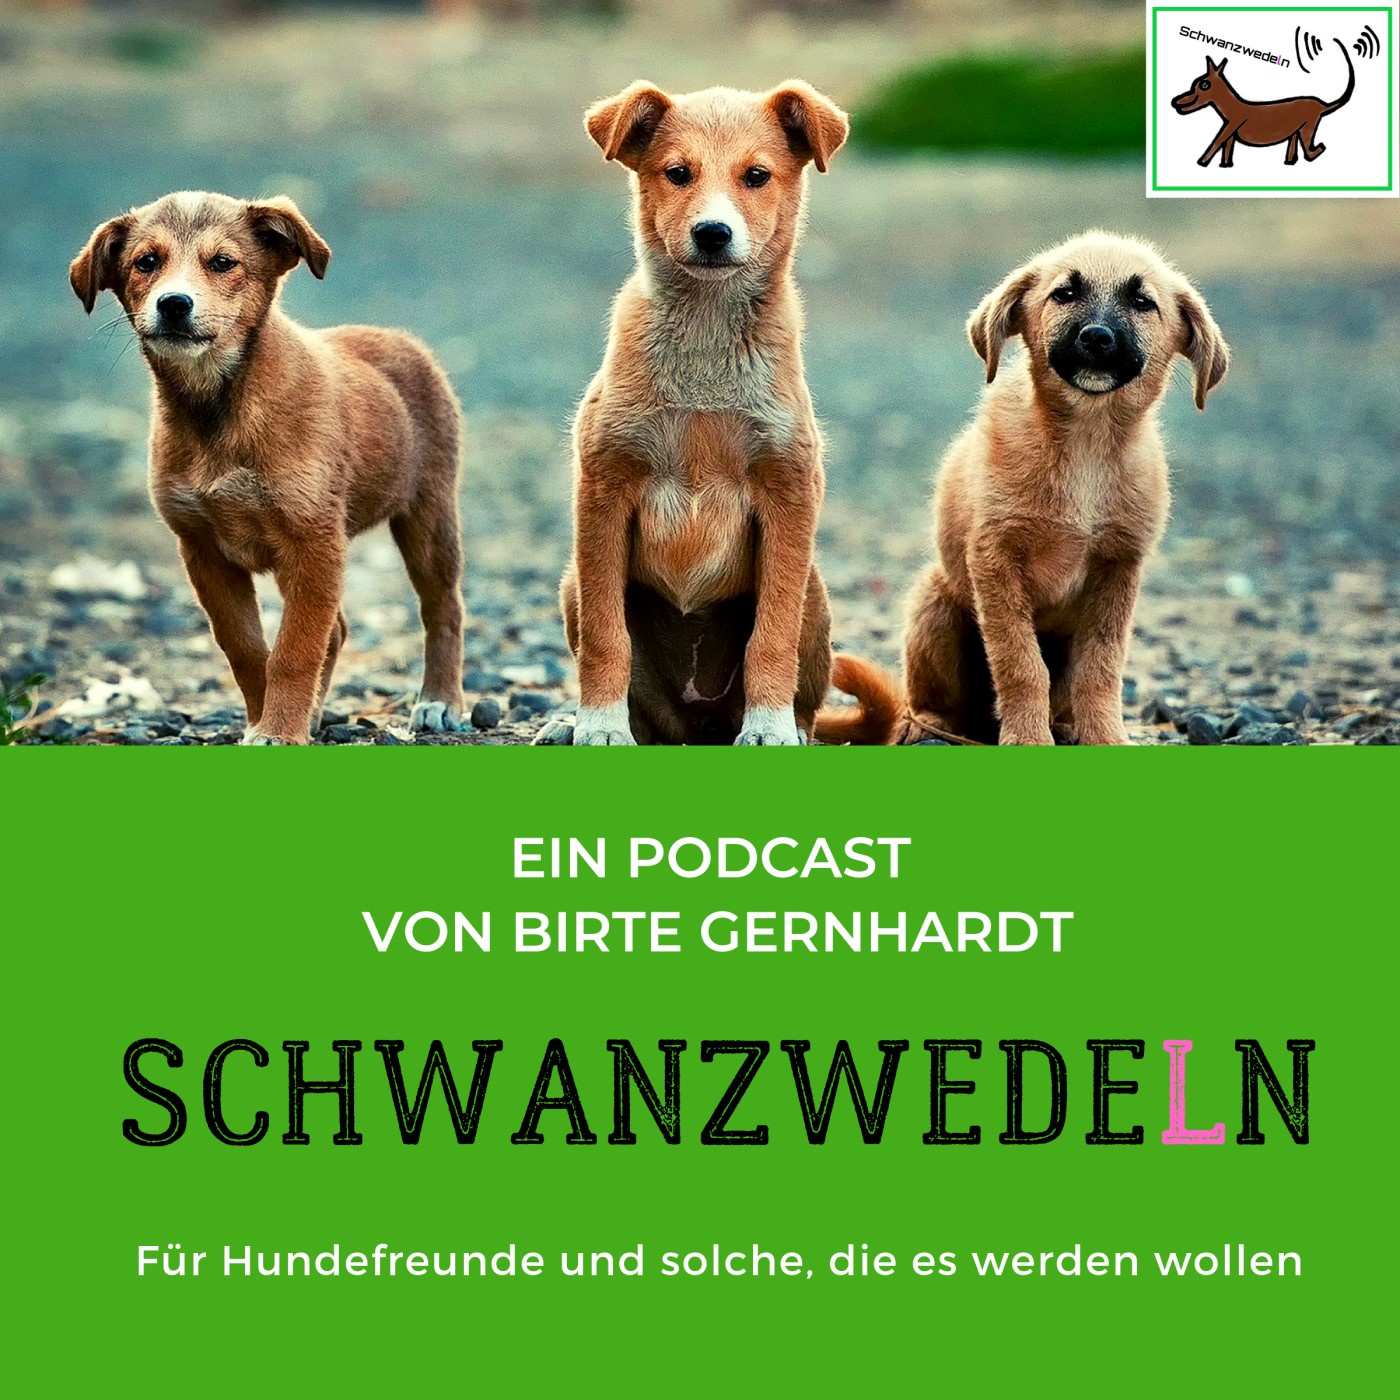 54 DogsCom - Kommunikation für Mensch und Hund